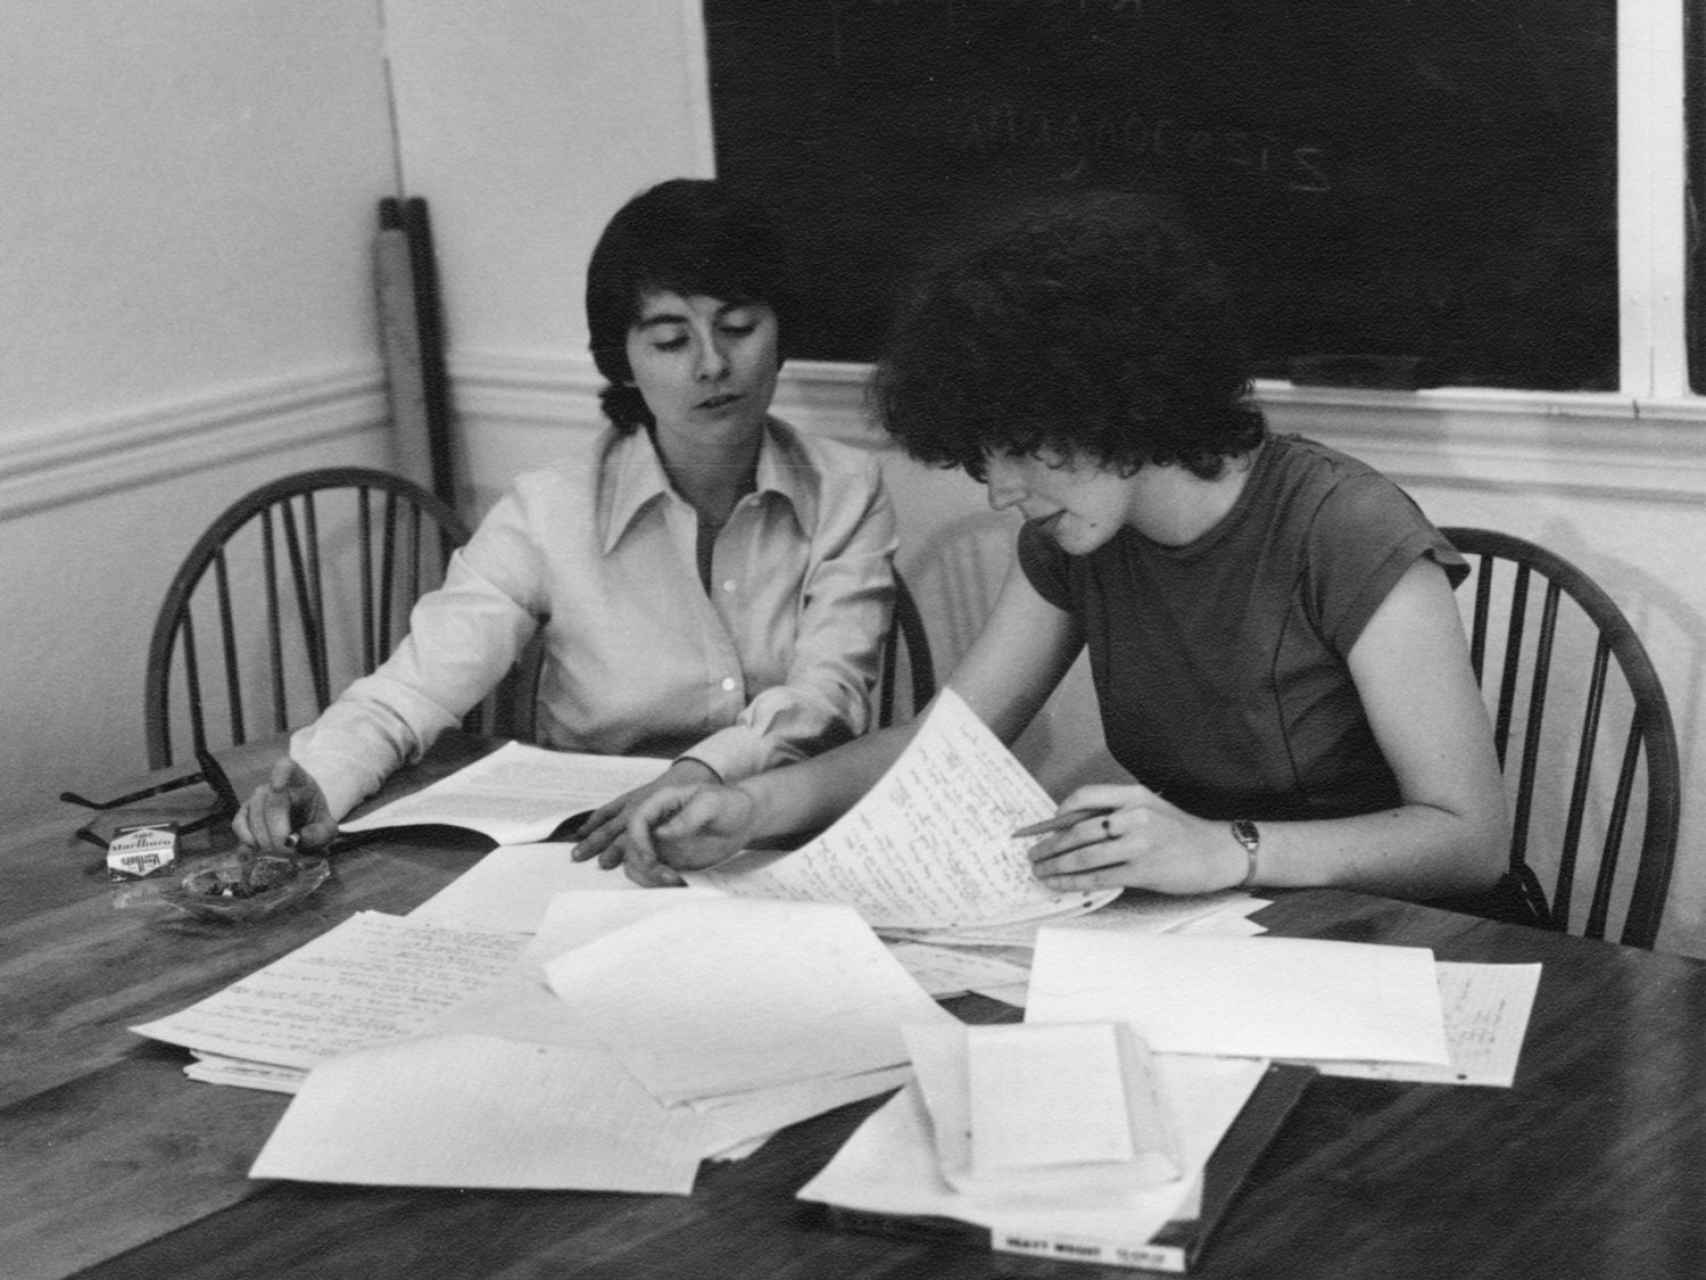 Camille Paglia dirigiendo una tutoría en 1977. Marlboro a su derecha.